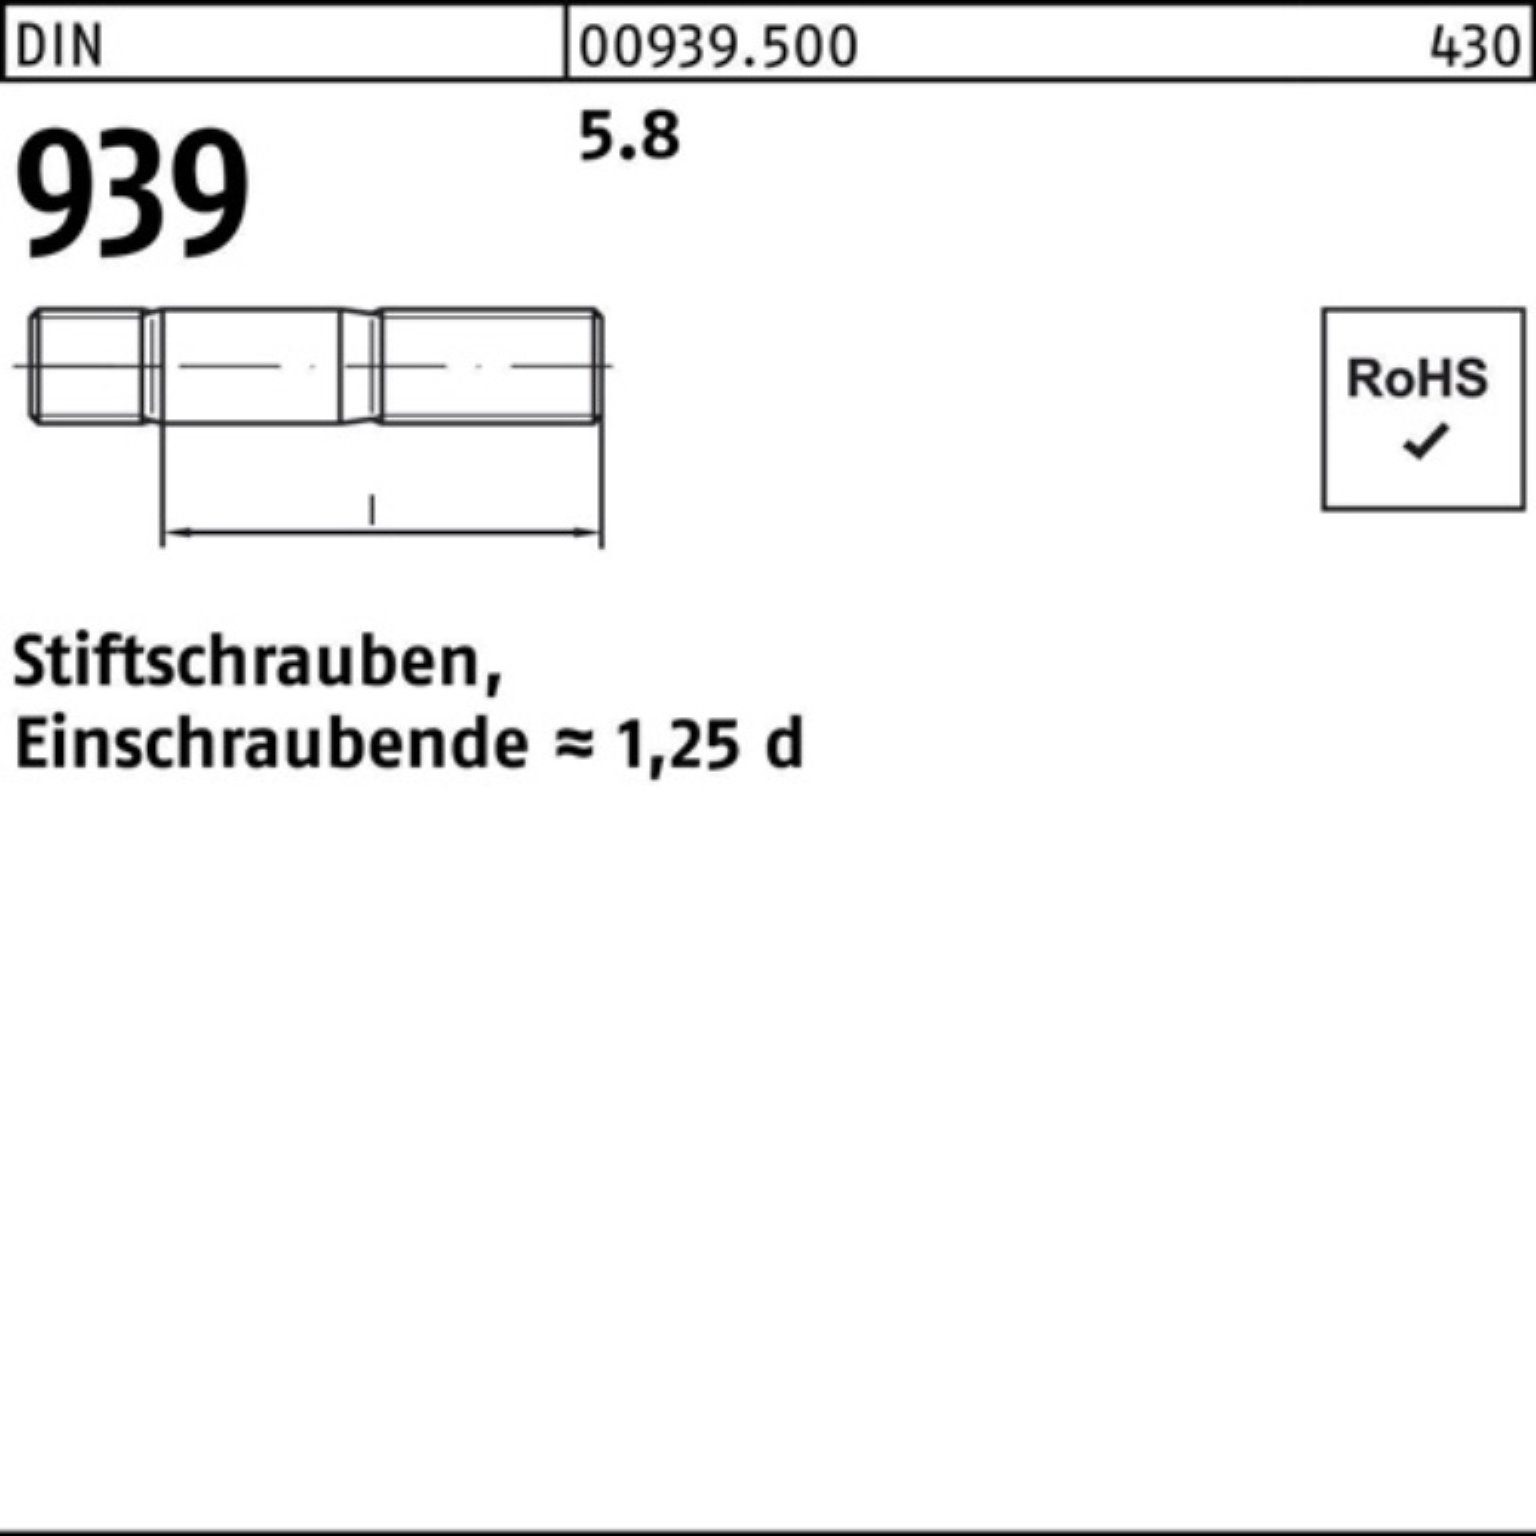 S Stiftschraube Reyher 10 M24x Stiftschraube Pack 939 DIN 100er 5.8 75 Einschraubende=1,25d